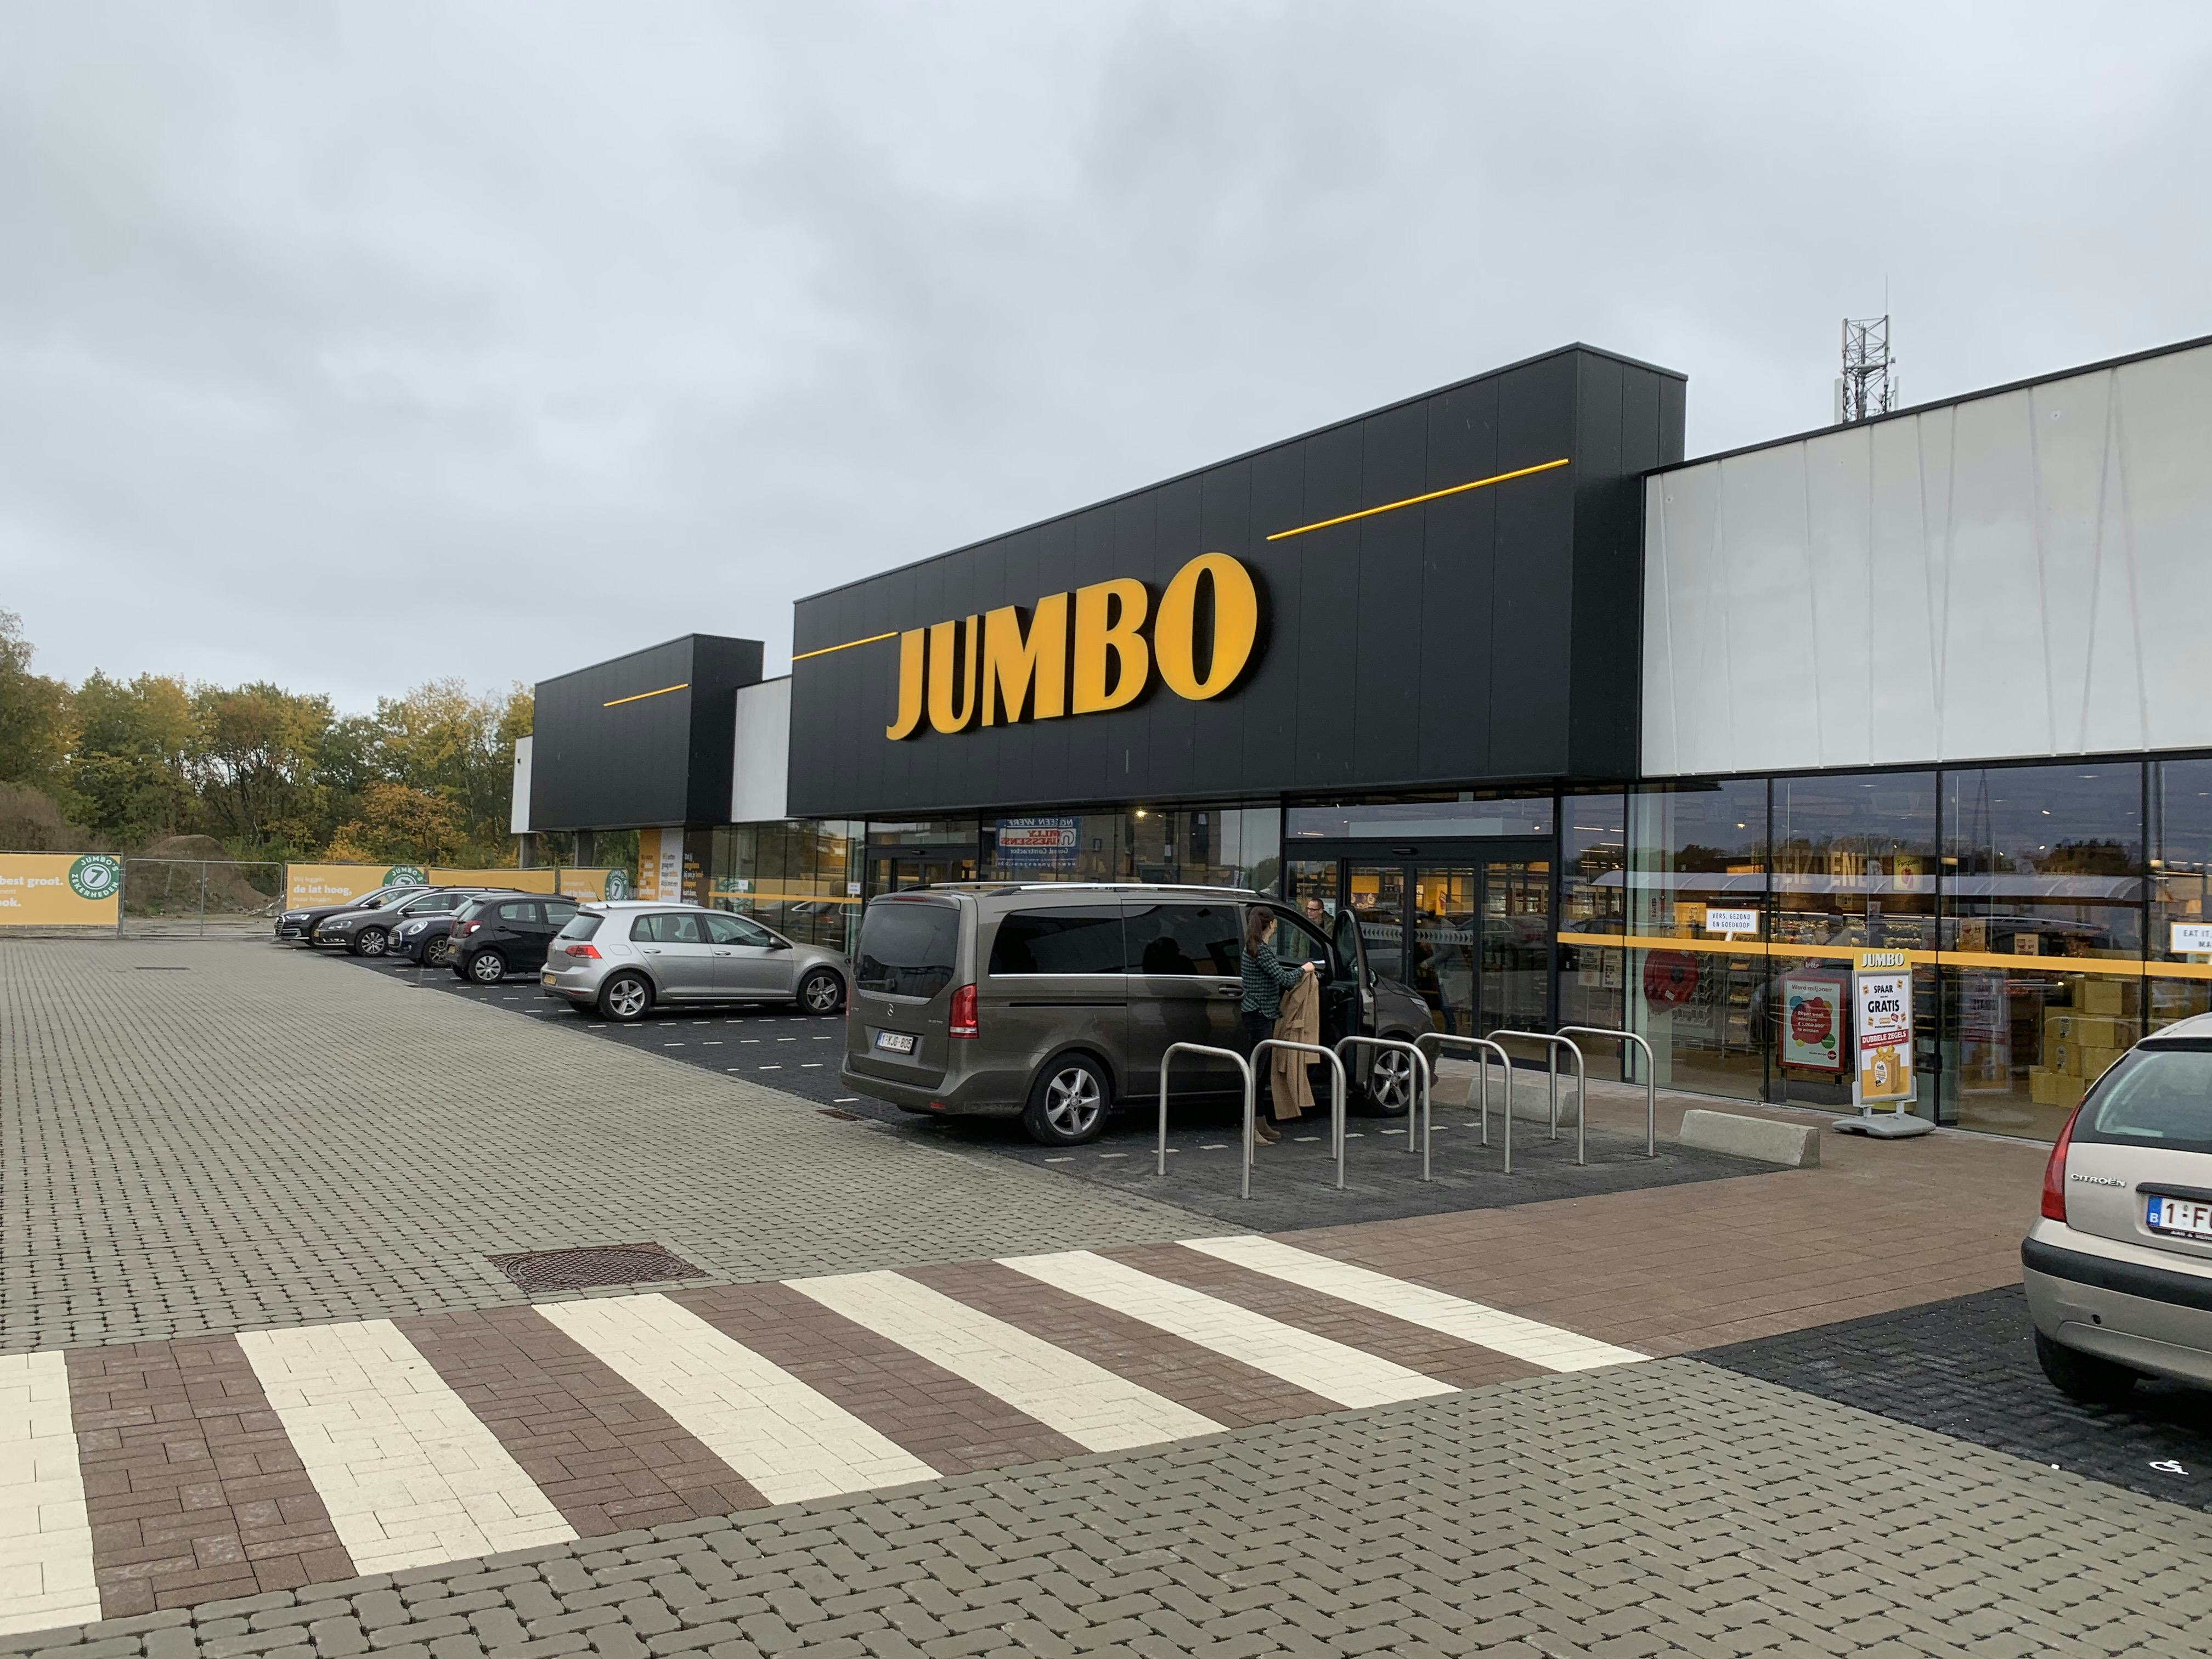 De eerste Jumbo in België vanaf de buitenkant gefotografeerd.